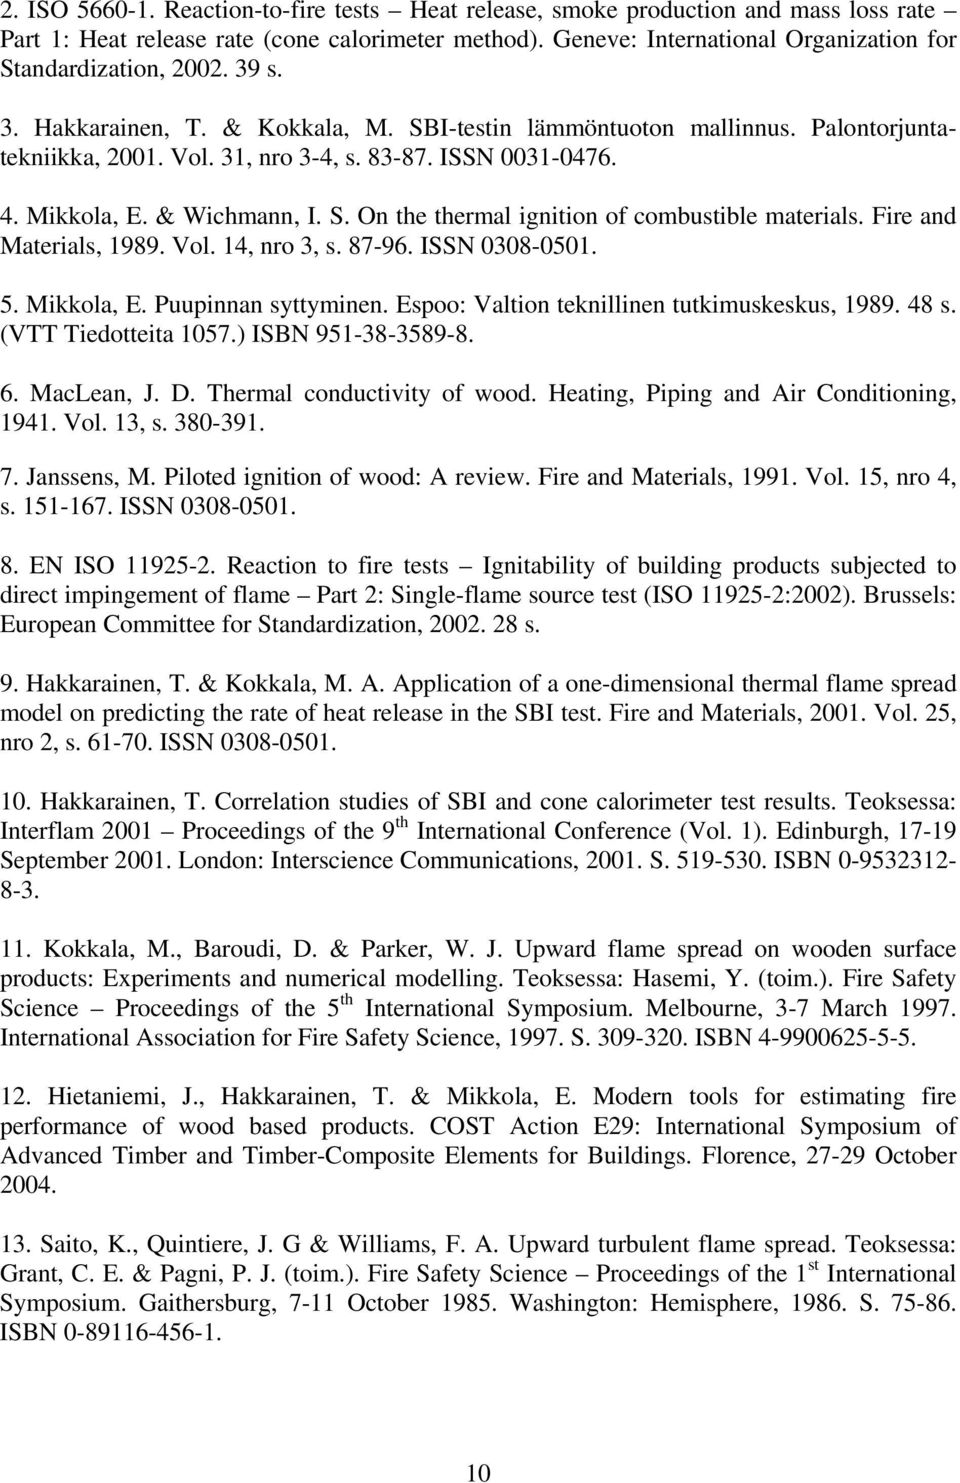 Fire and Materials, 1989. Vol. 14, nro 3, s. 87-96. ISSN 38-51. 5. Mikkola, E. Puupinnan syttyminen. Espoo: Valtion teknillinen tutkimuskeskus, 1989. 48 s. (VTT Tiedotteita 157.) ISBN 951-38-3589-8.